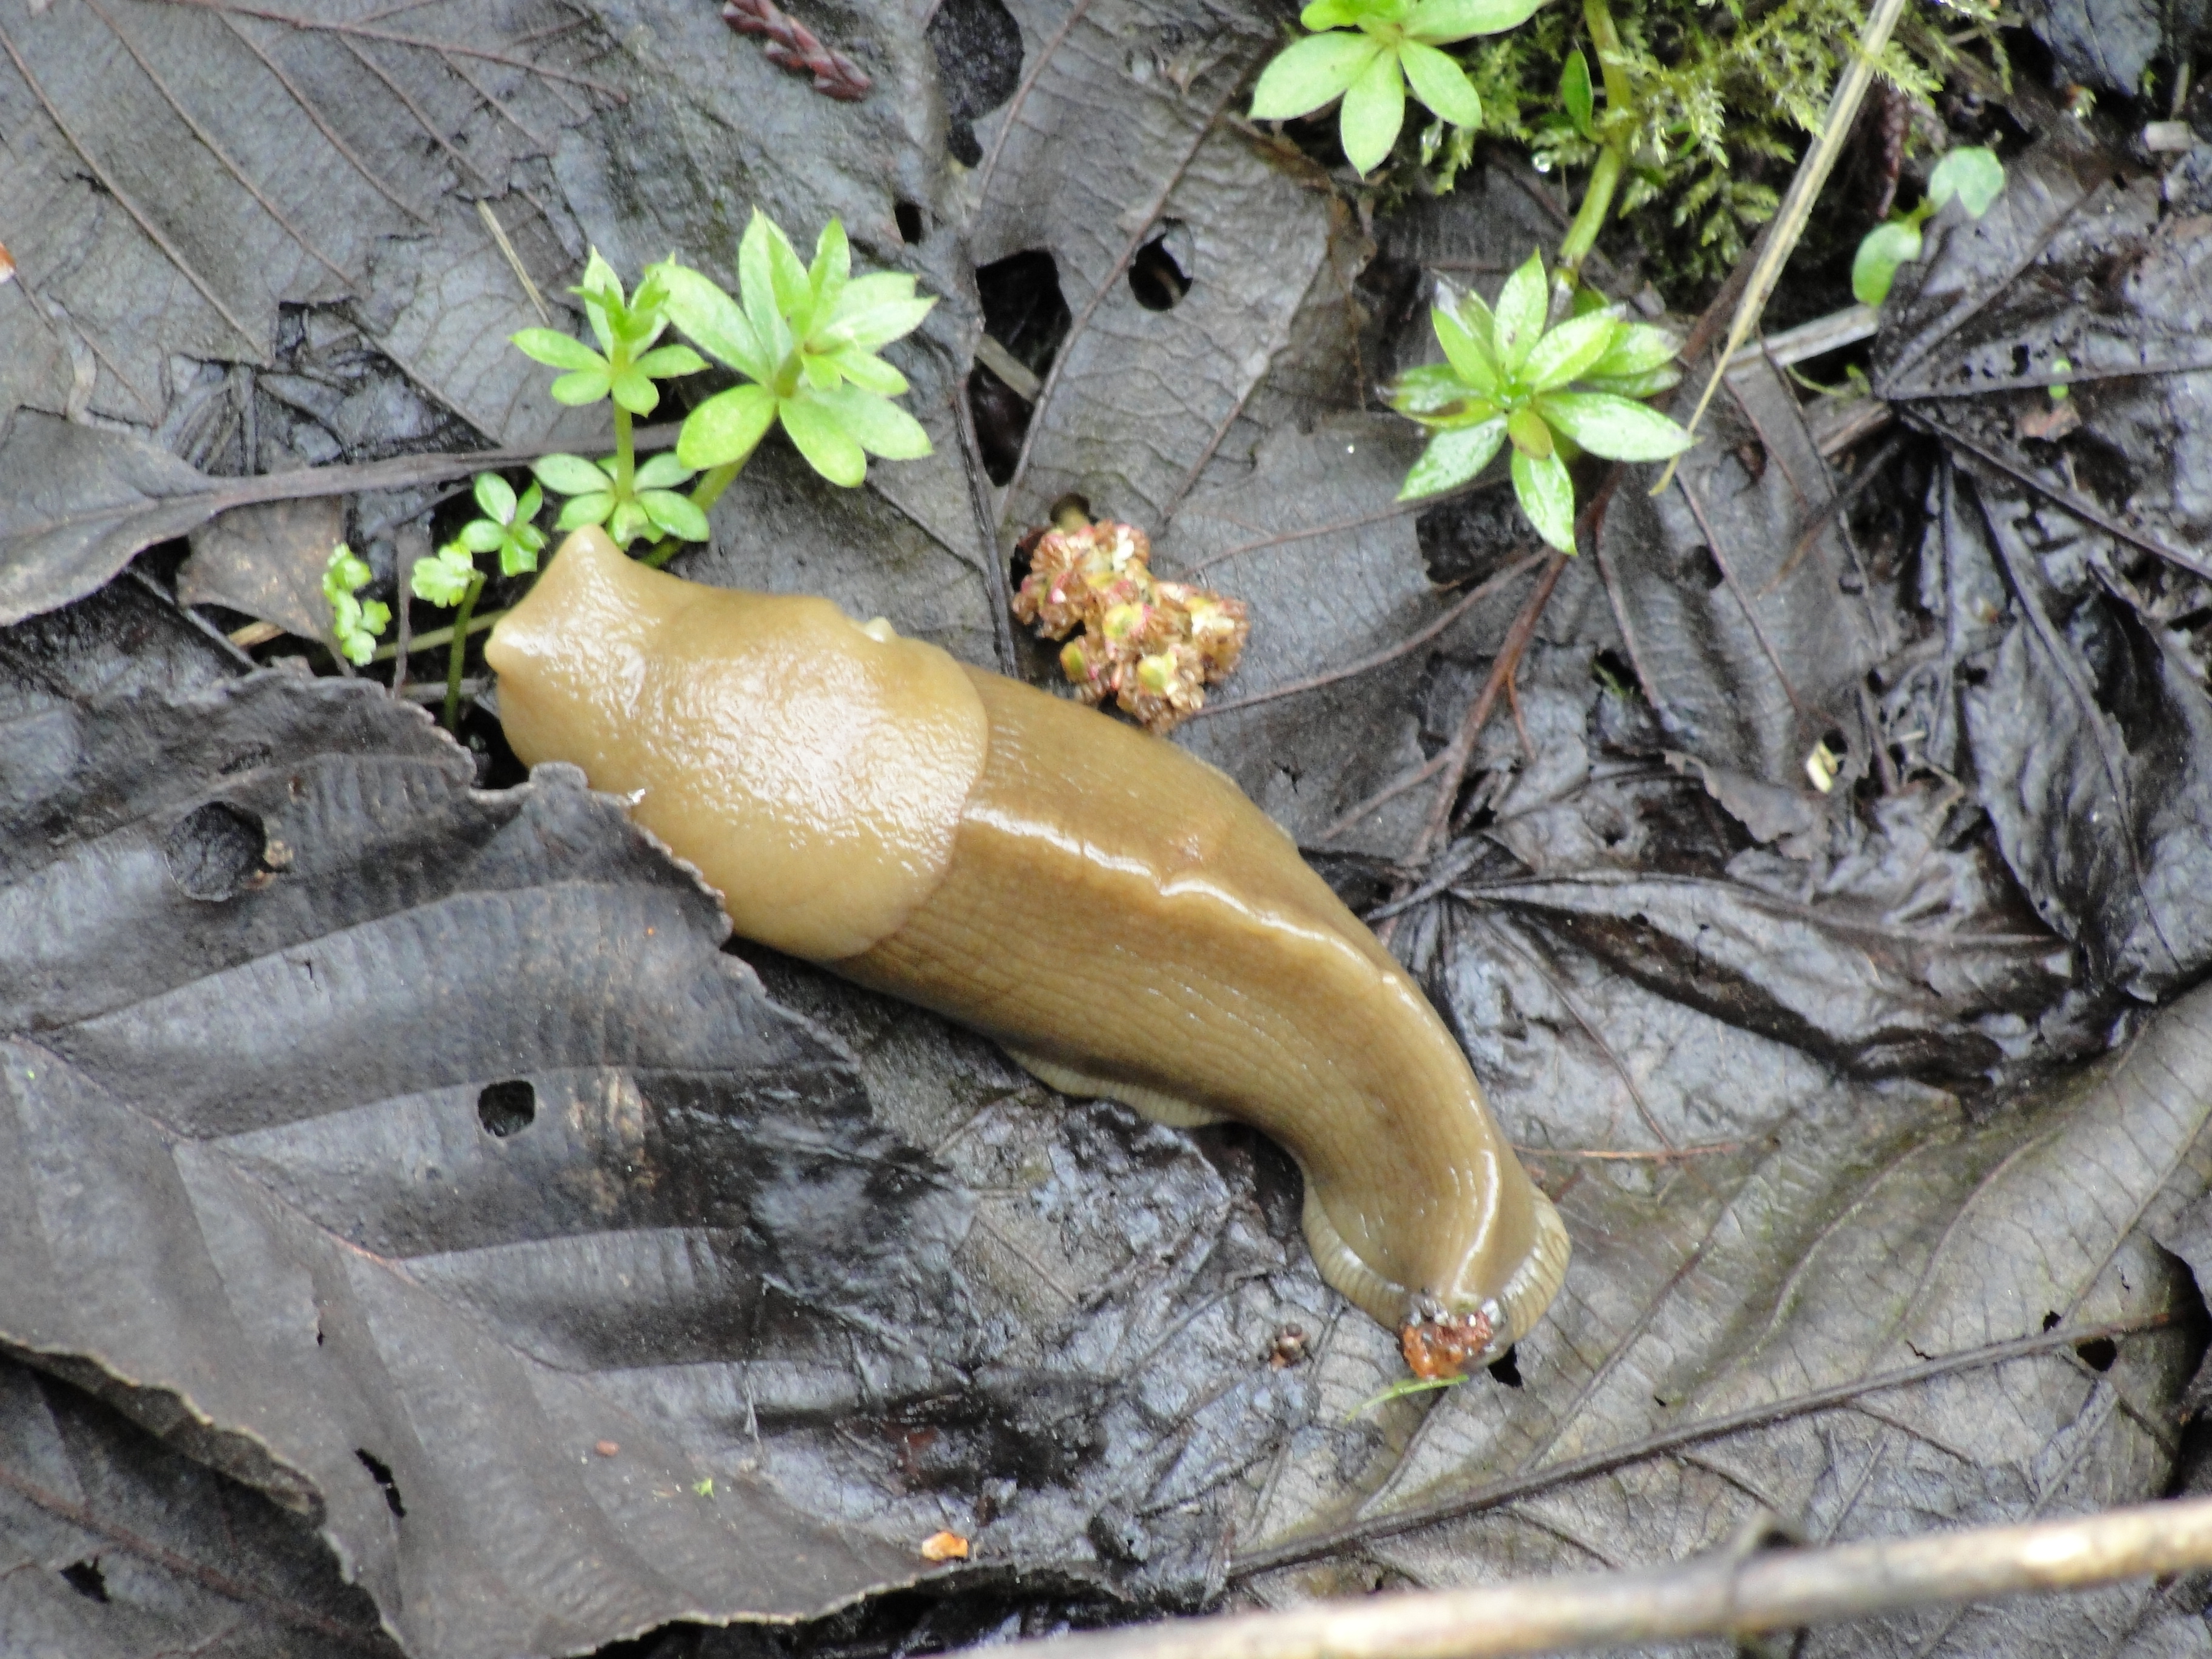 Blog From The Bog: Those Wonderful Slugs